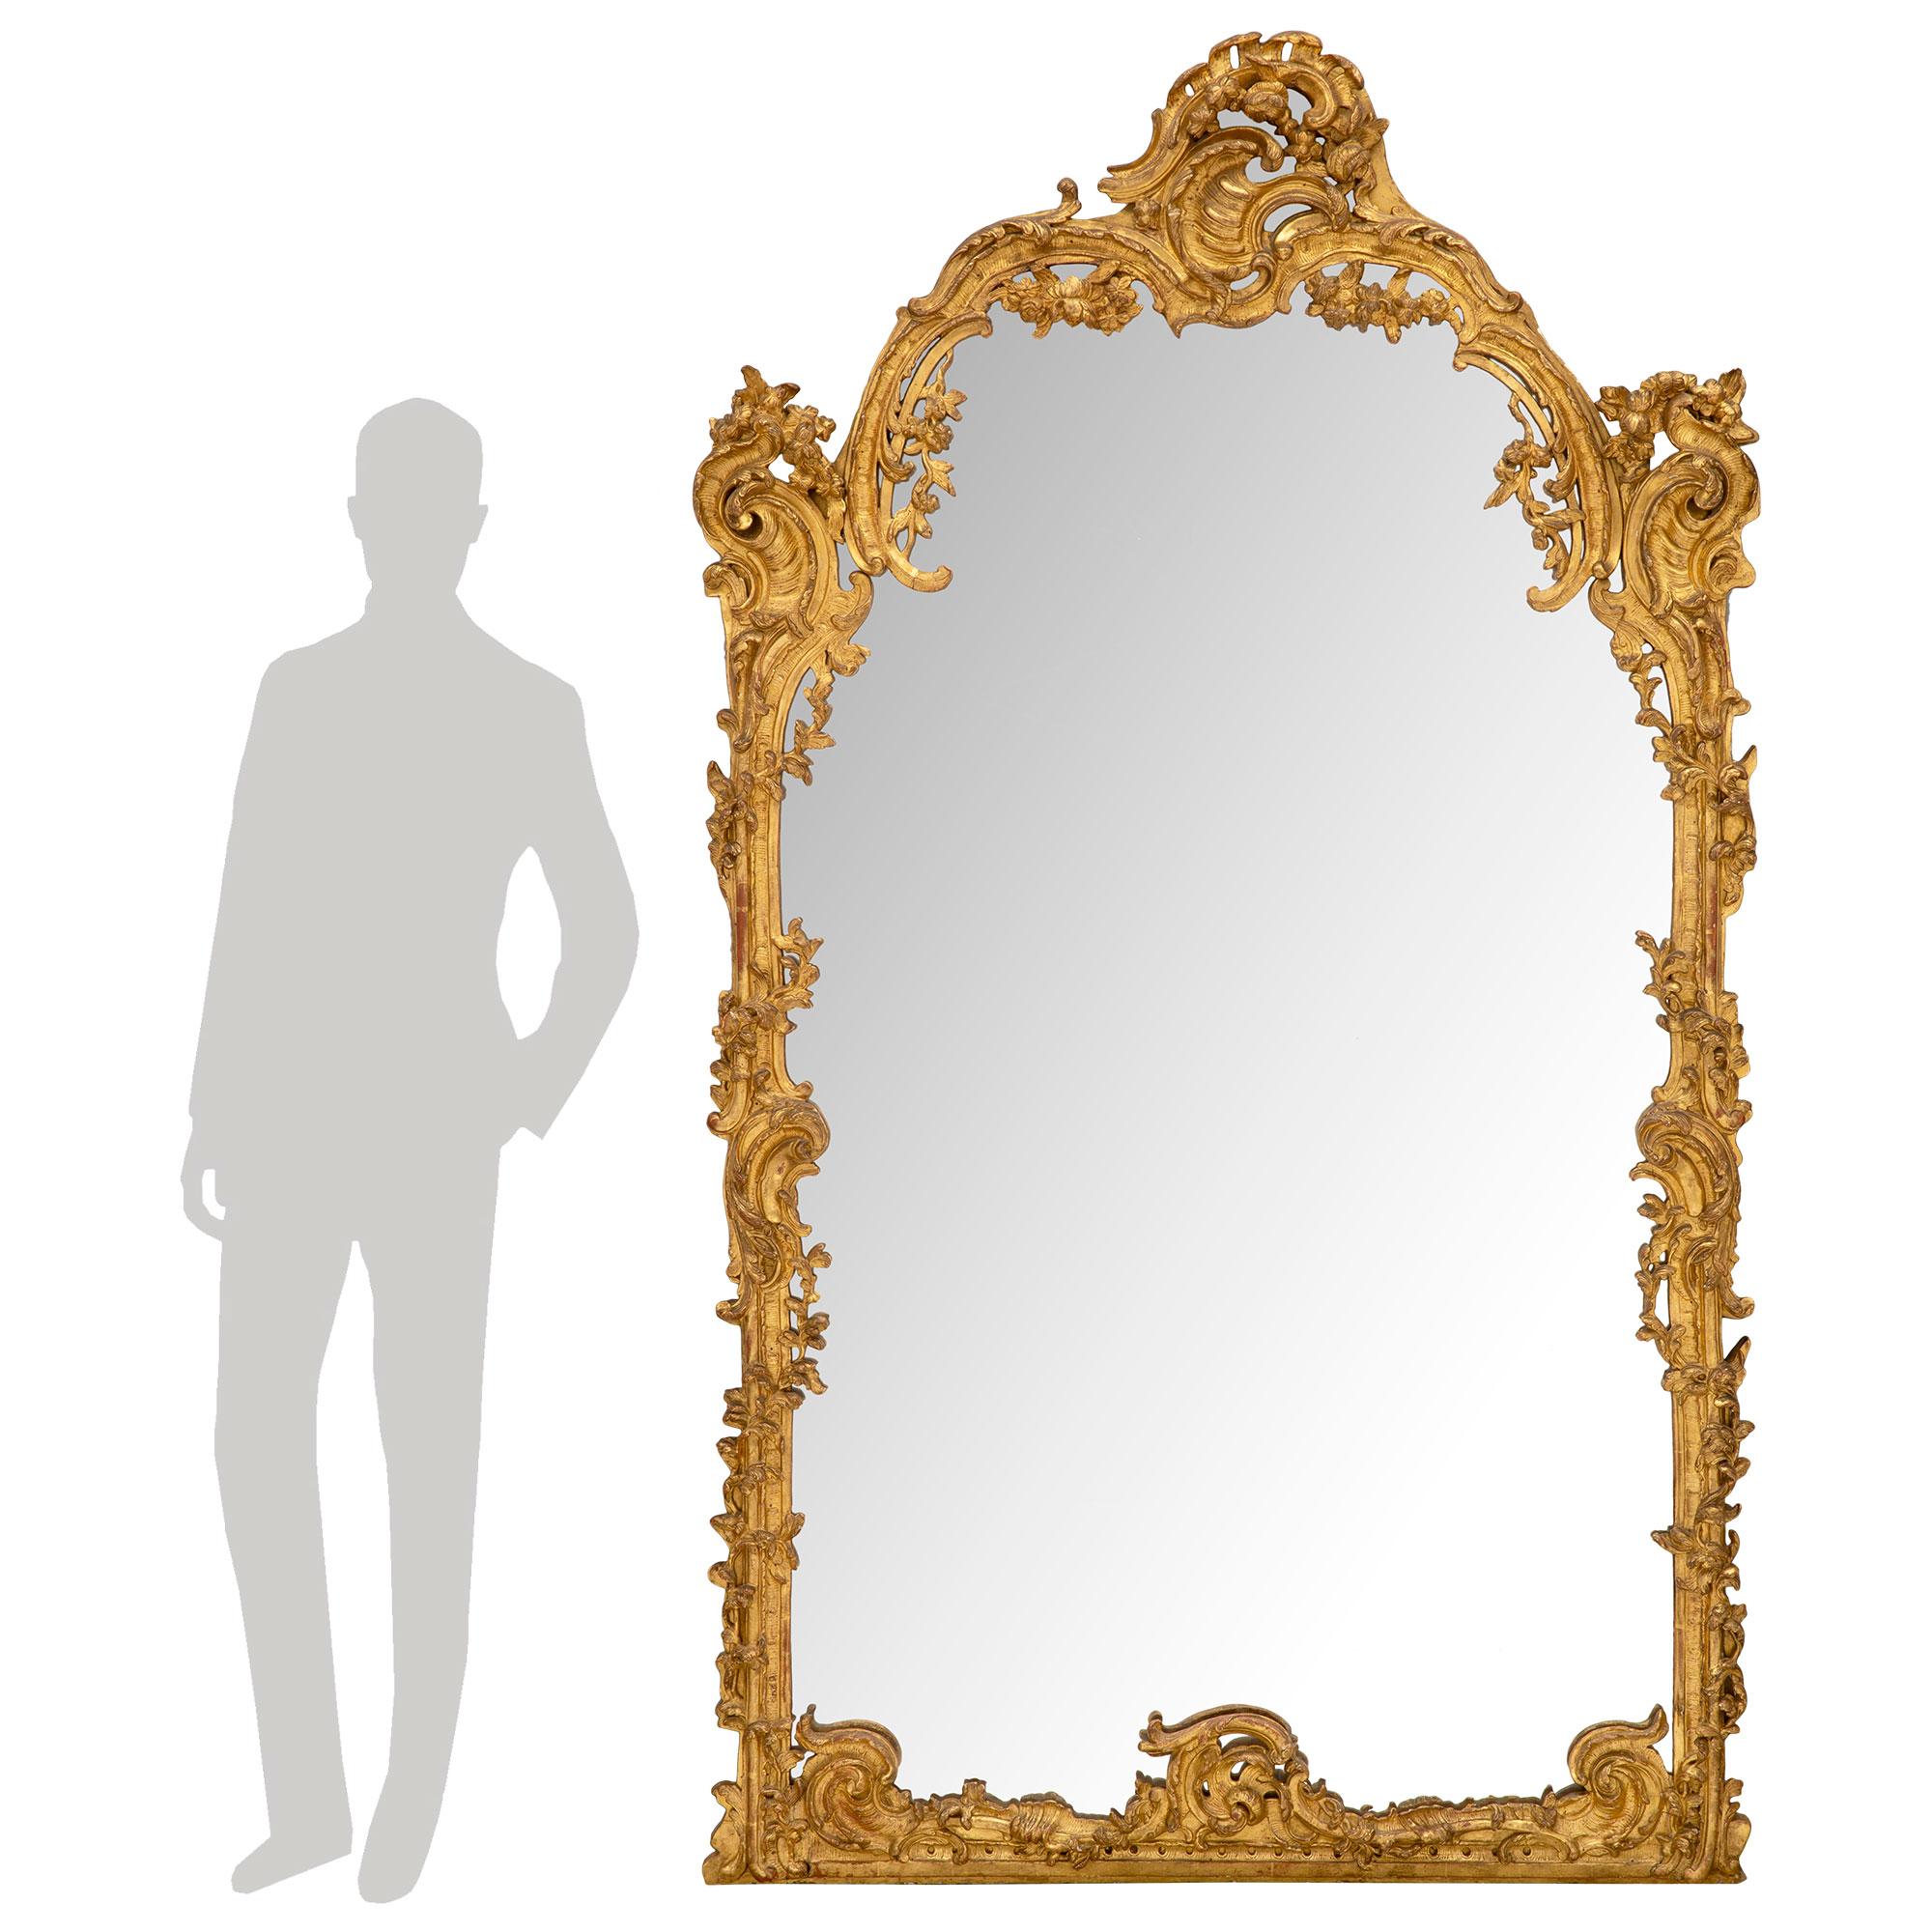 Superbe et grand miroir en bois doré de style Régence du XVIIIe siècle. La plaque de miroir d'origine est encadrée d'une étonnante bordure mouchetée richement sculptée, avec des mouvements de feuillage enveloppants très détaillés. La base droite est